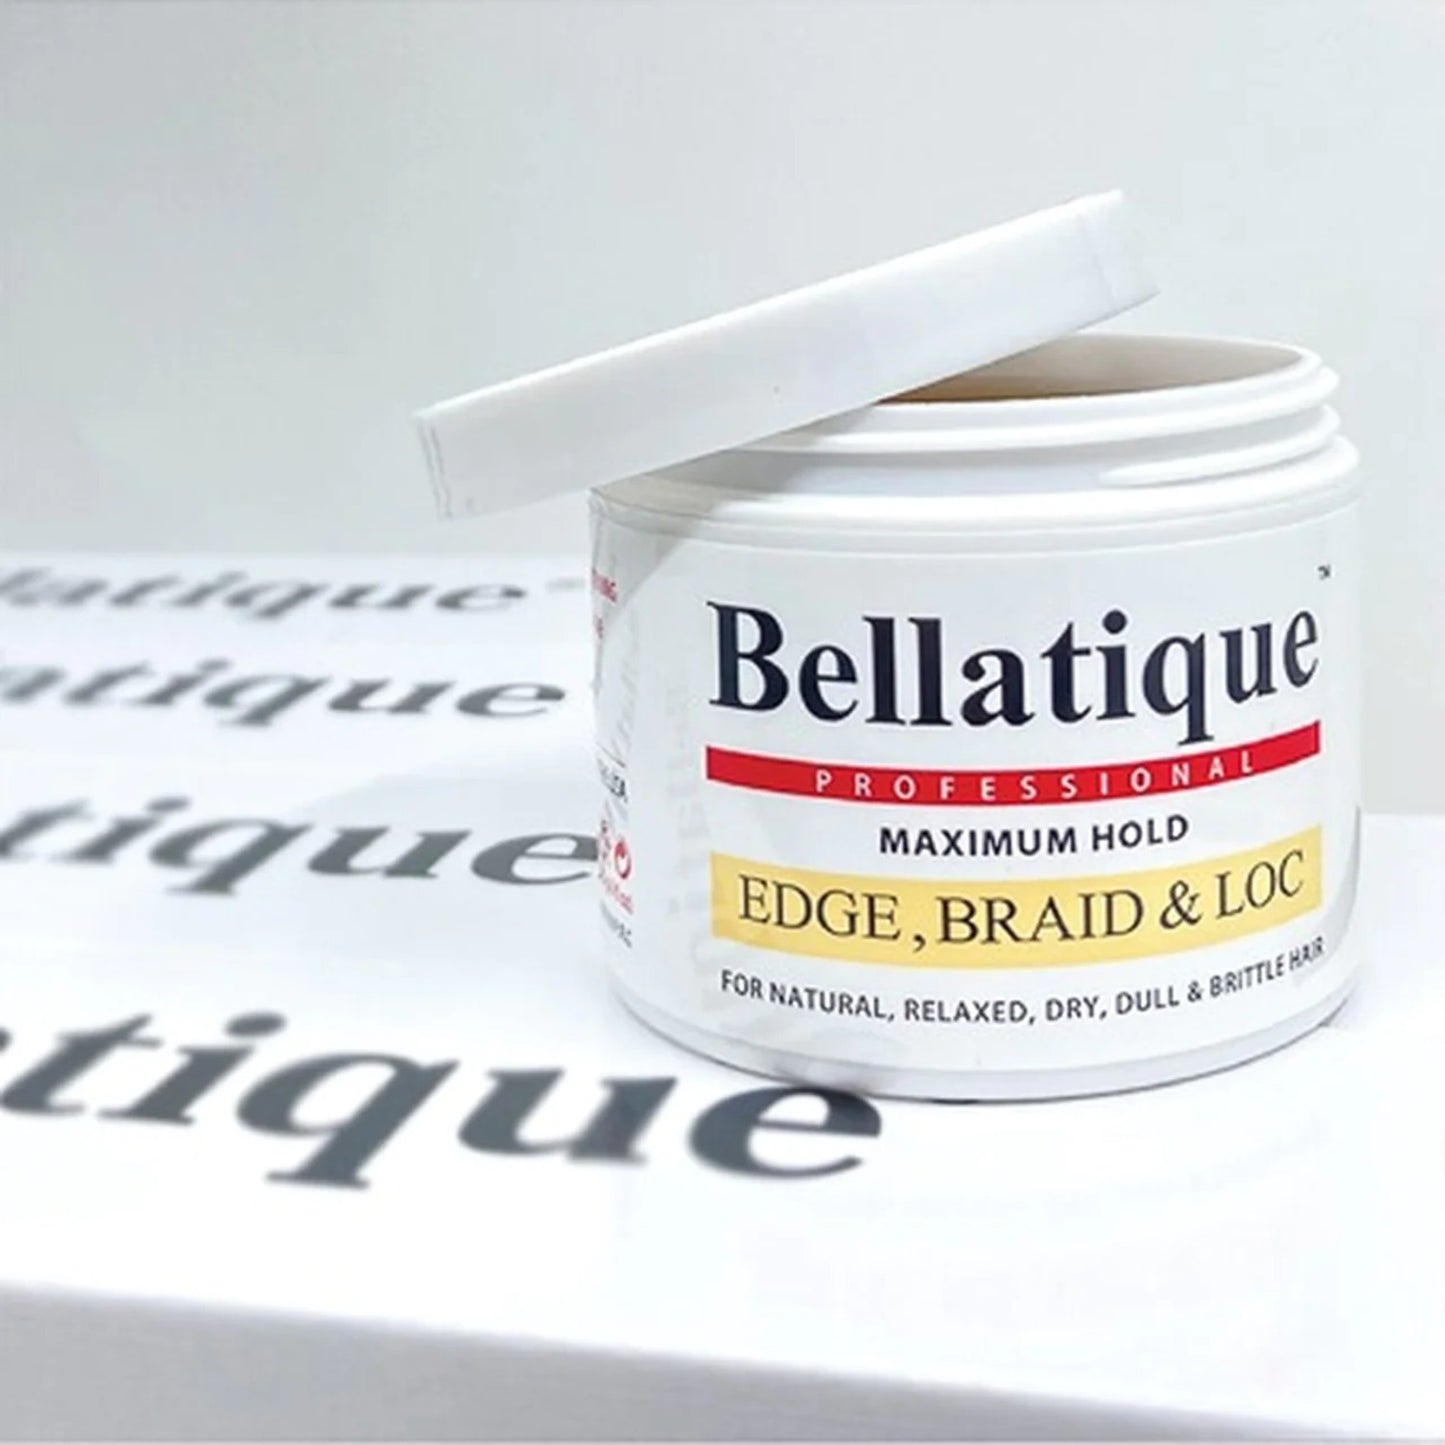 Bellatique - Professional Maximum Hold Edge, Braid Loc 4 fl oz